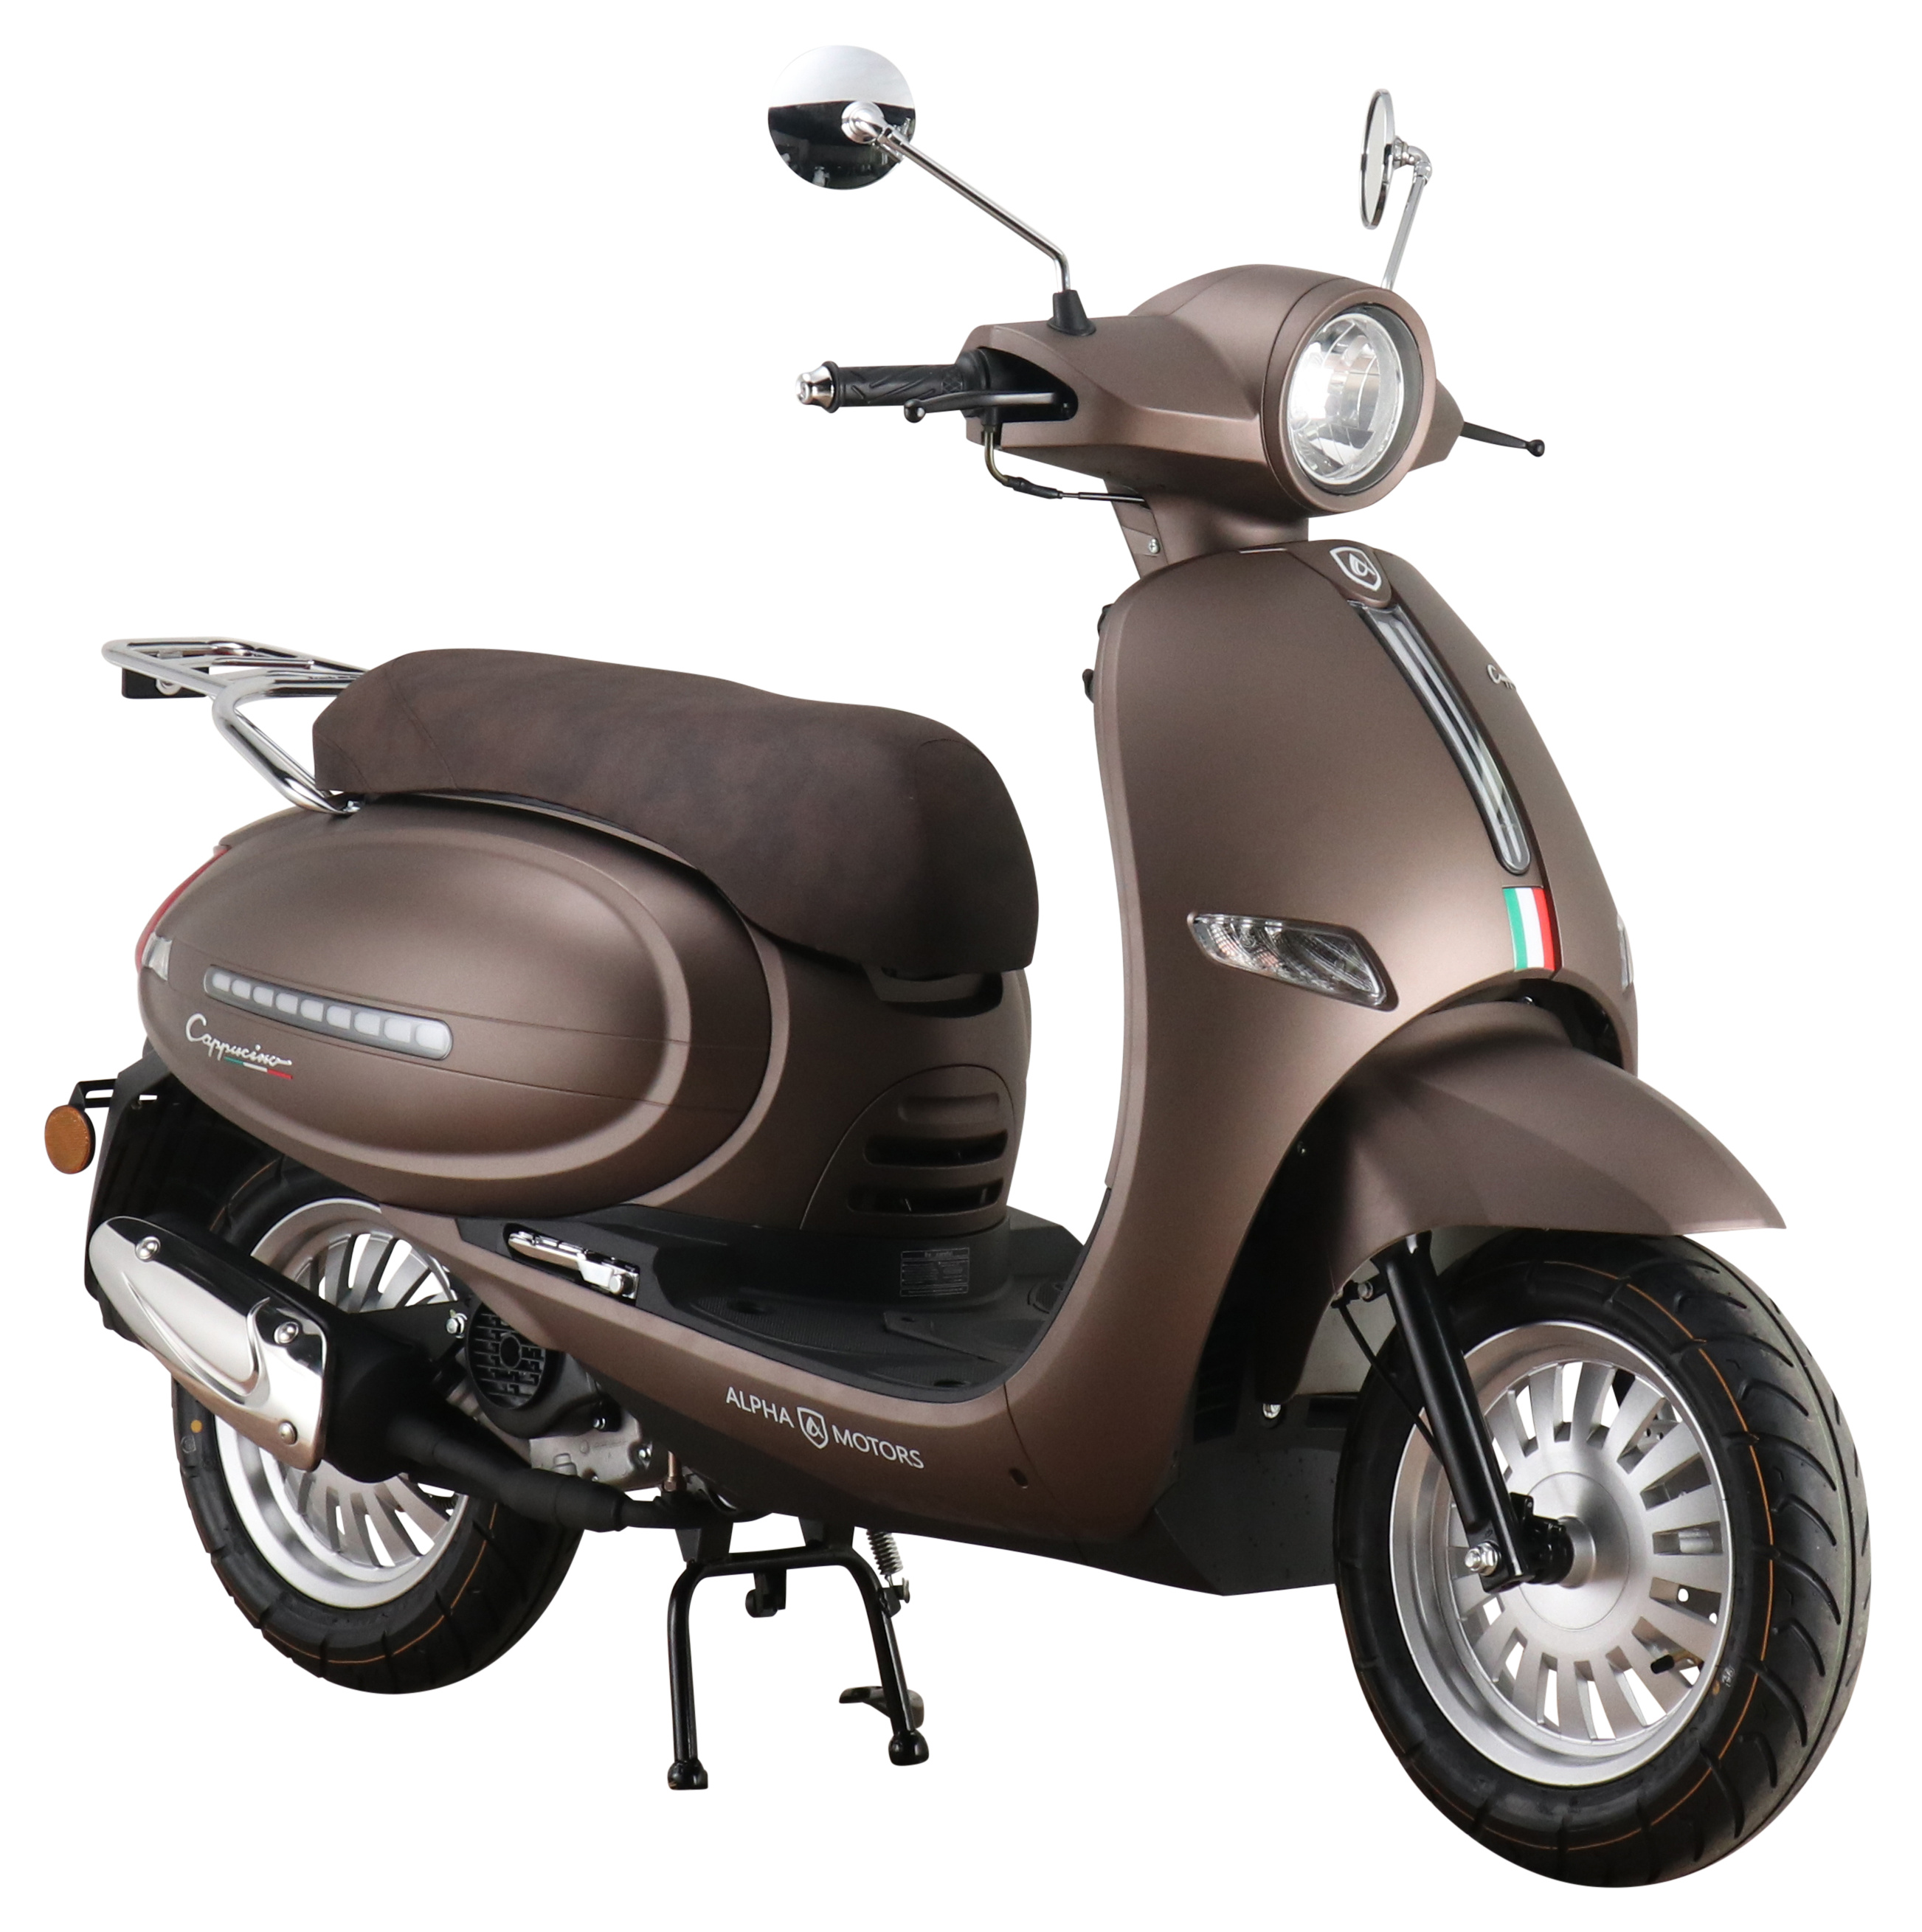 Motorroller Cappucino kmh ccm 125 85 EURO 5